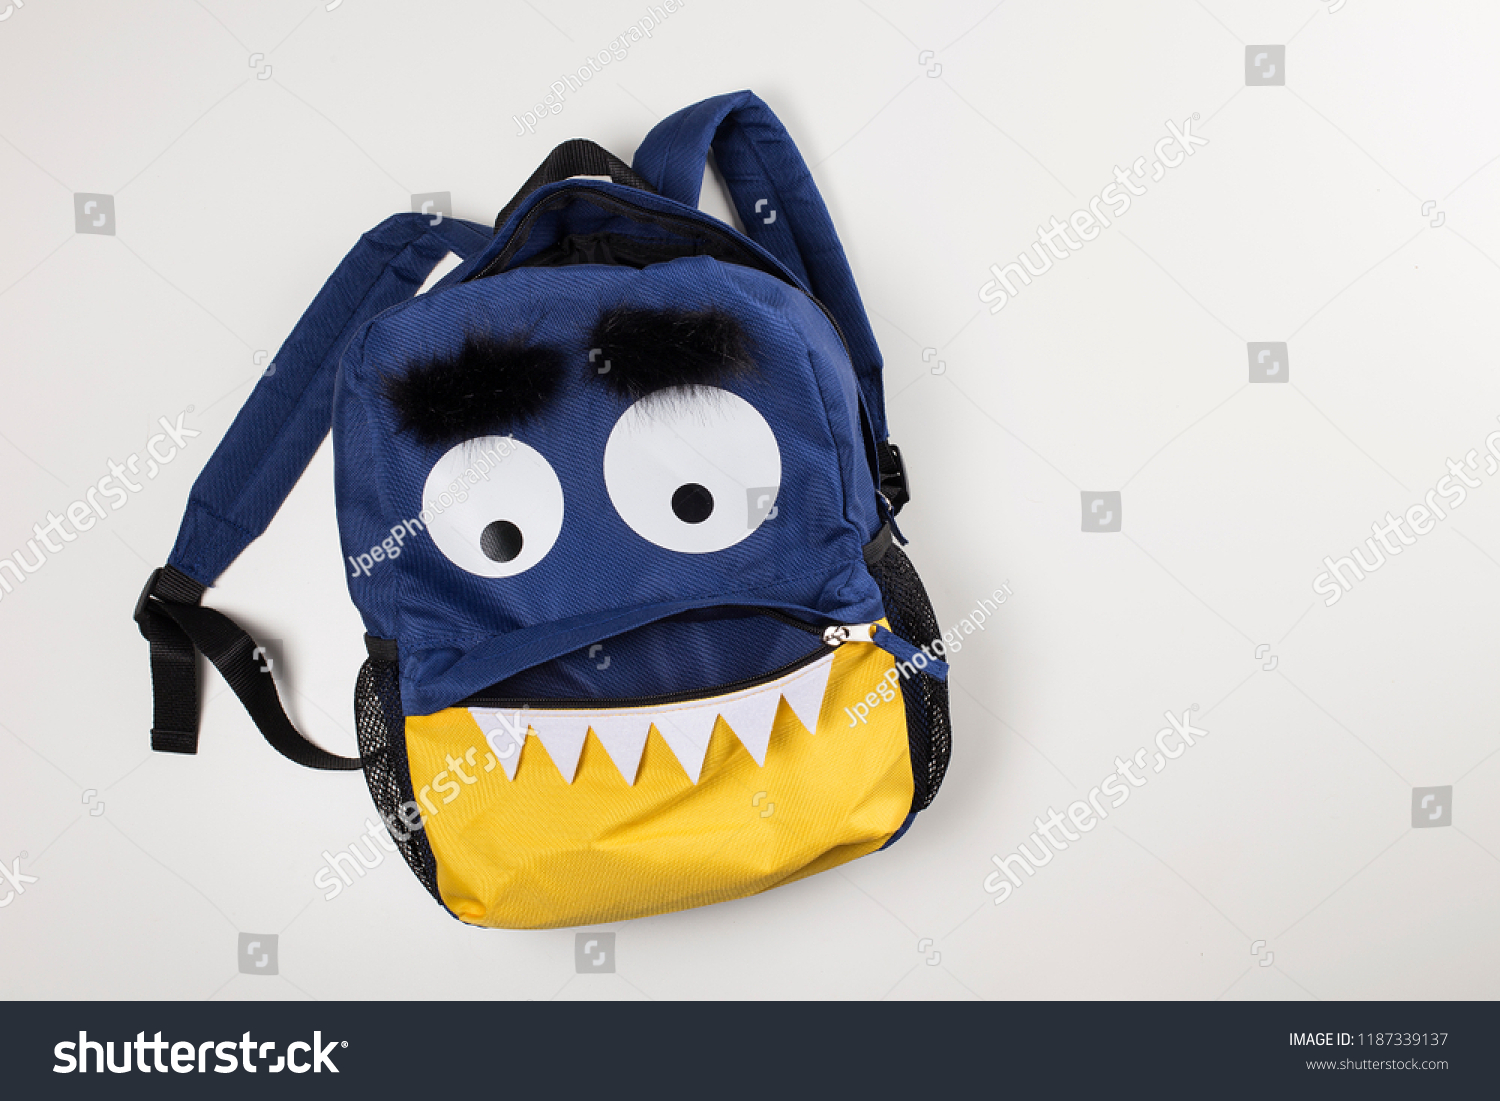 Funny Children Backpack Monster Face 